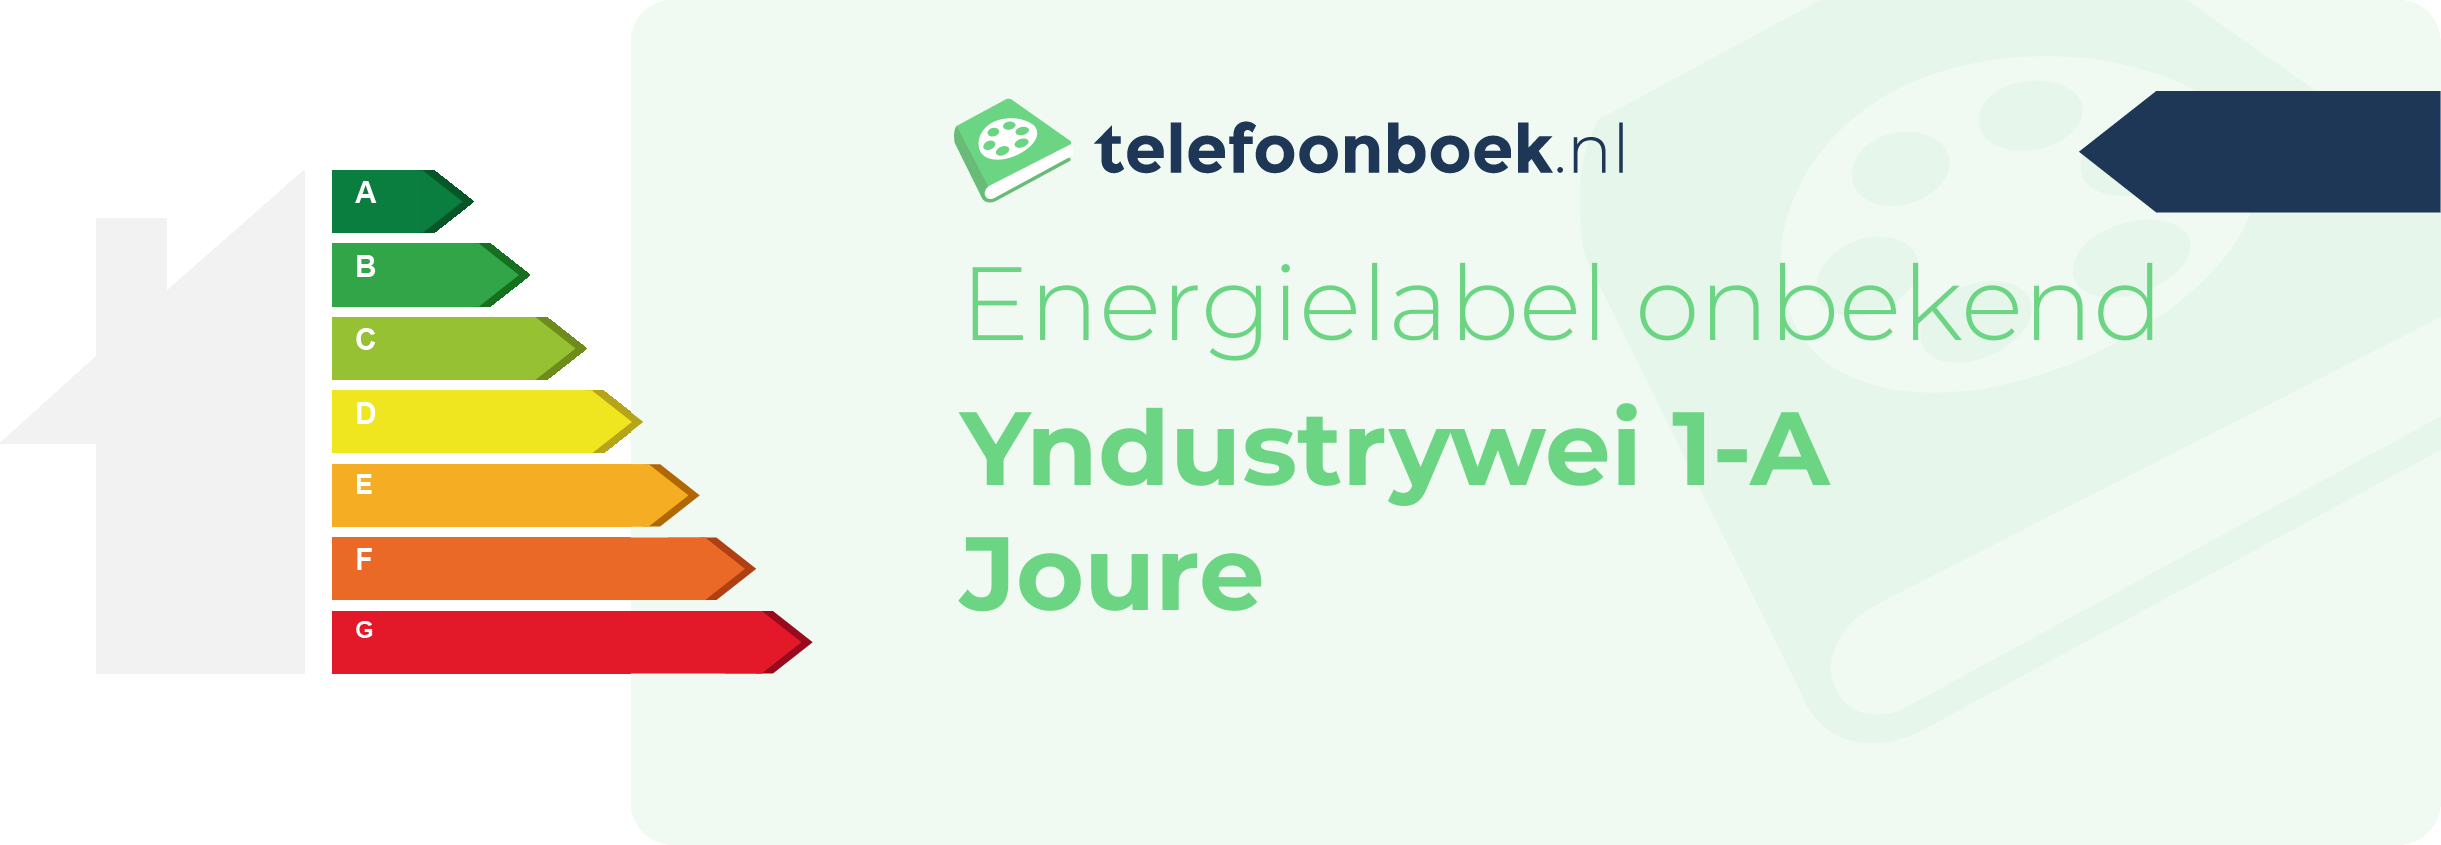 Energielabel Yndustrywei 1-A Joure